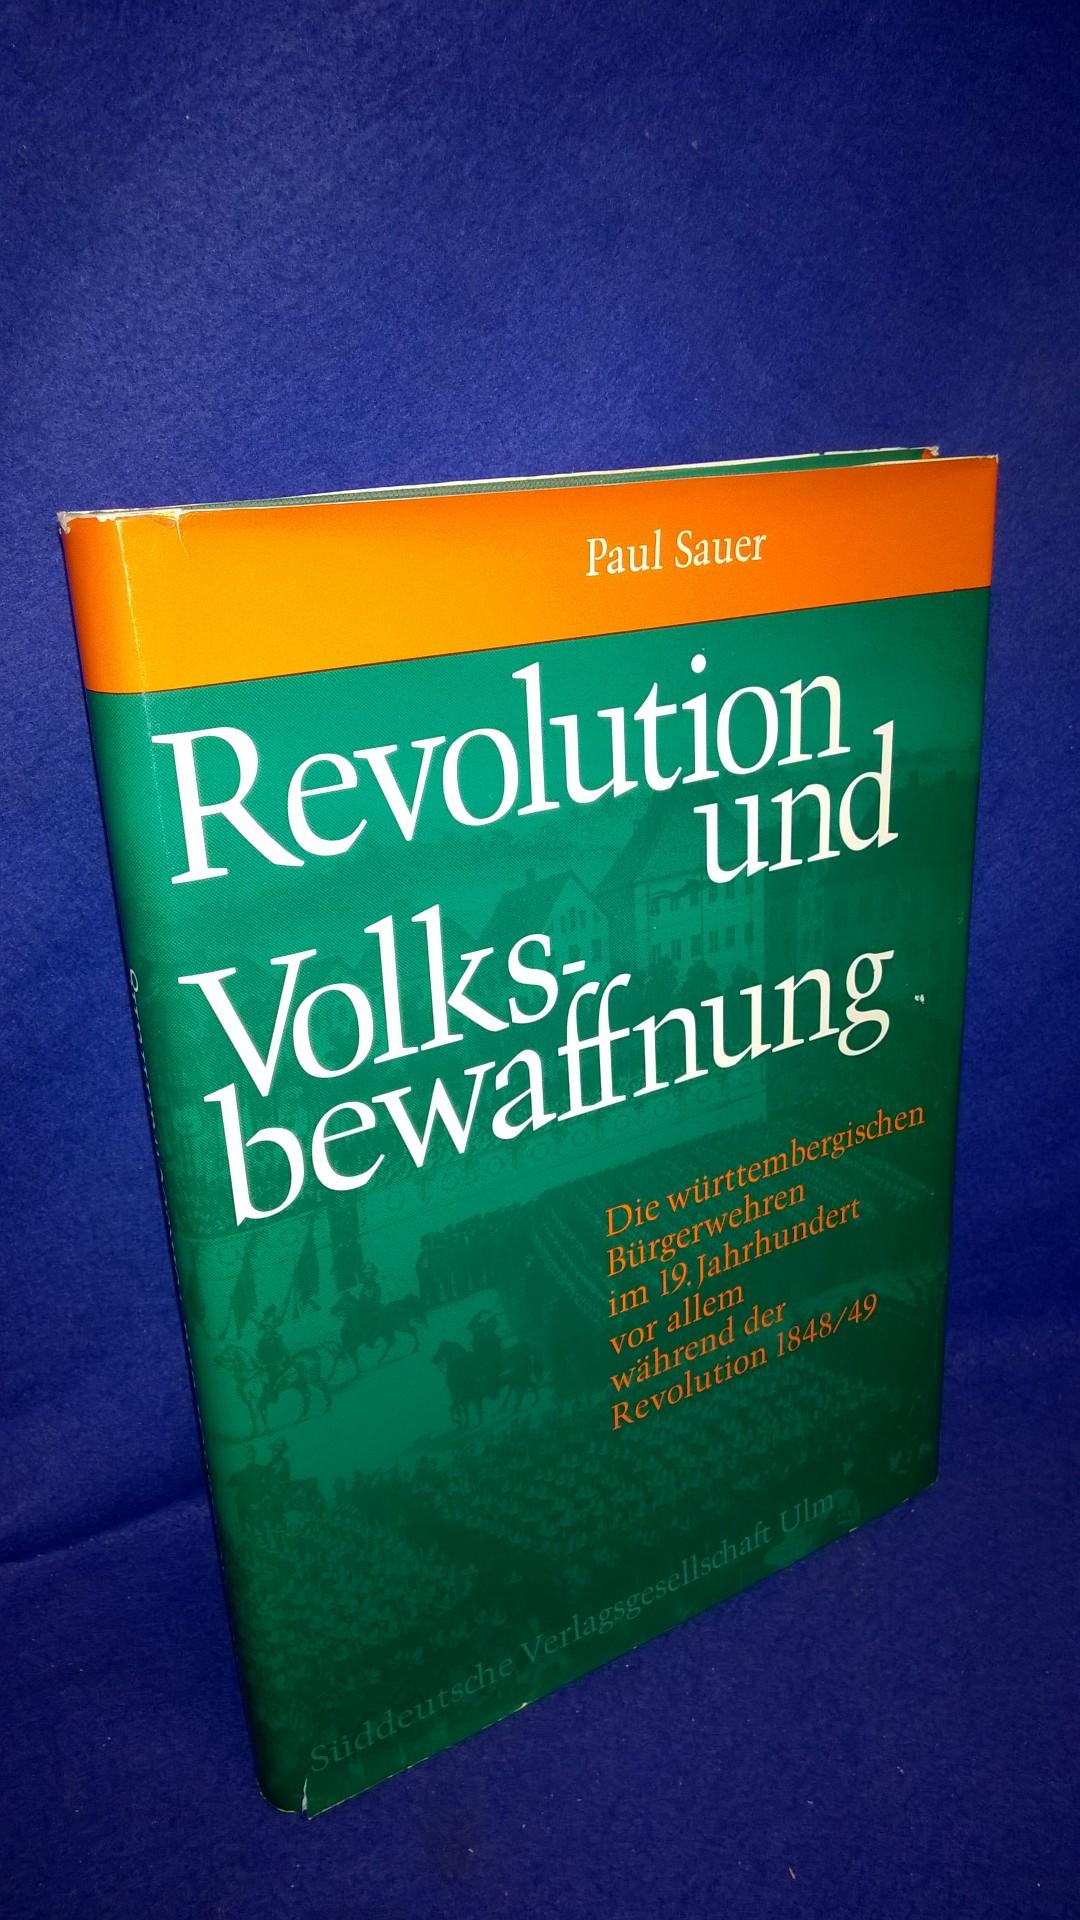 Revolution und Volksbewaffnung. Die württembergischen Bürgerwehren im 19. Jahrhundert, vor allem während der Revolution von 1848/49